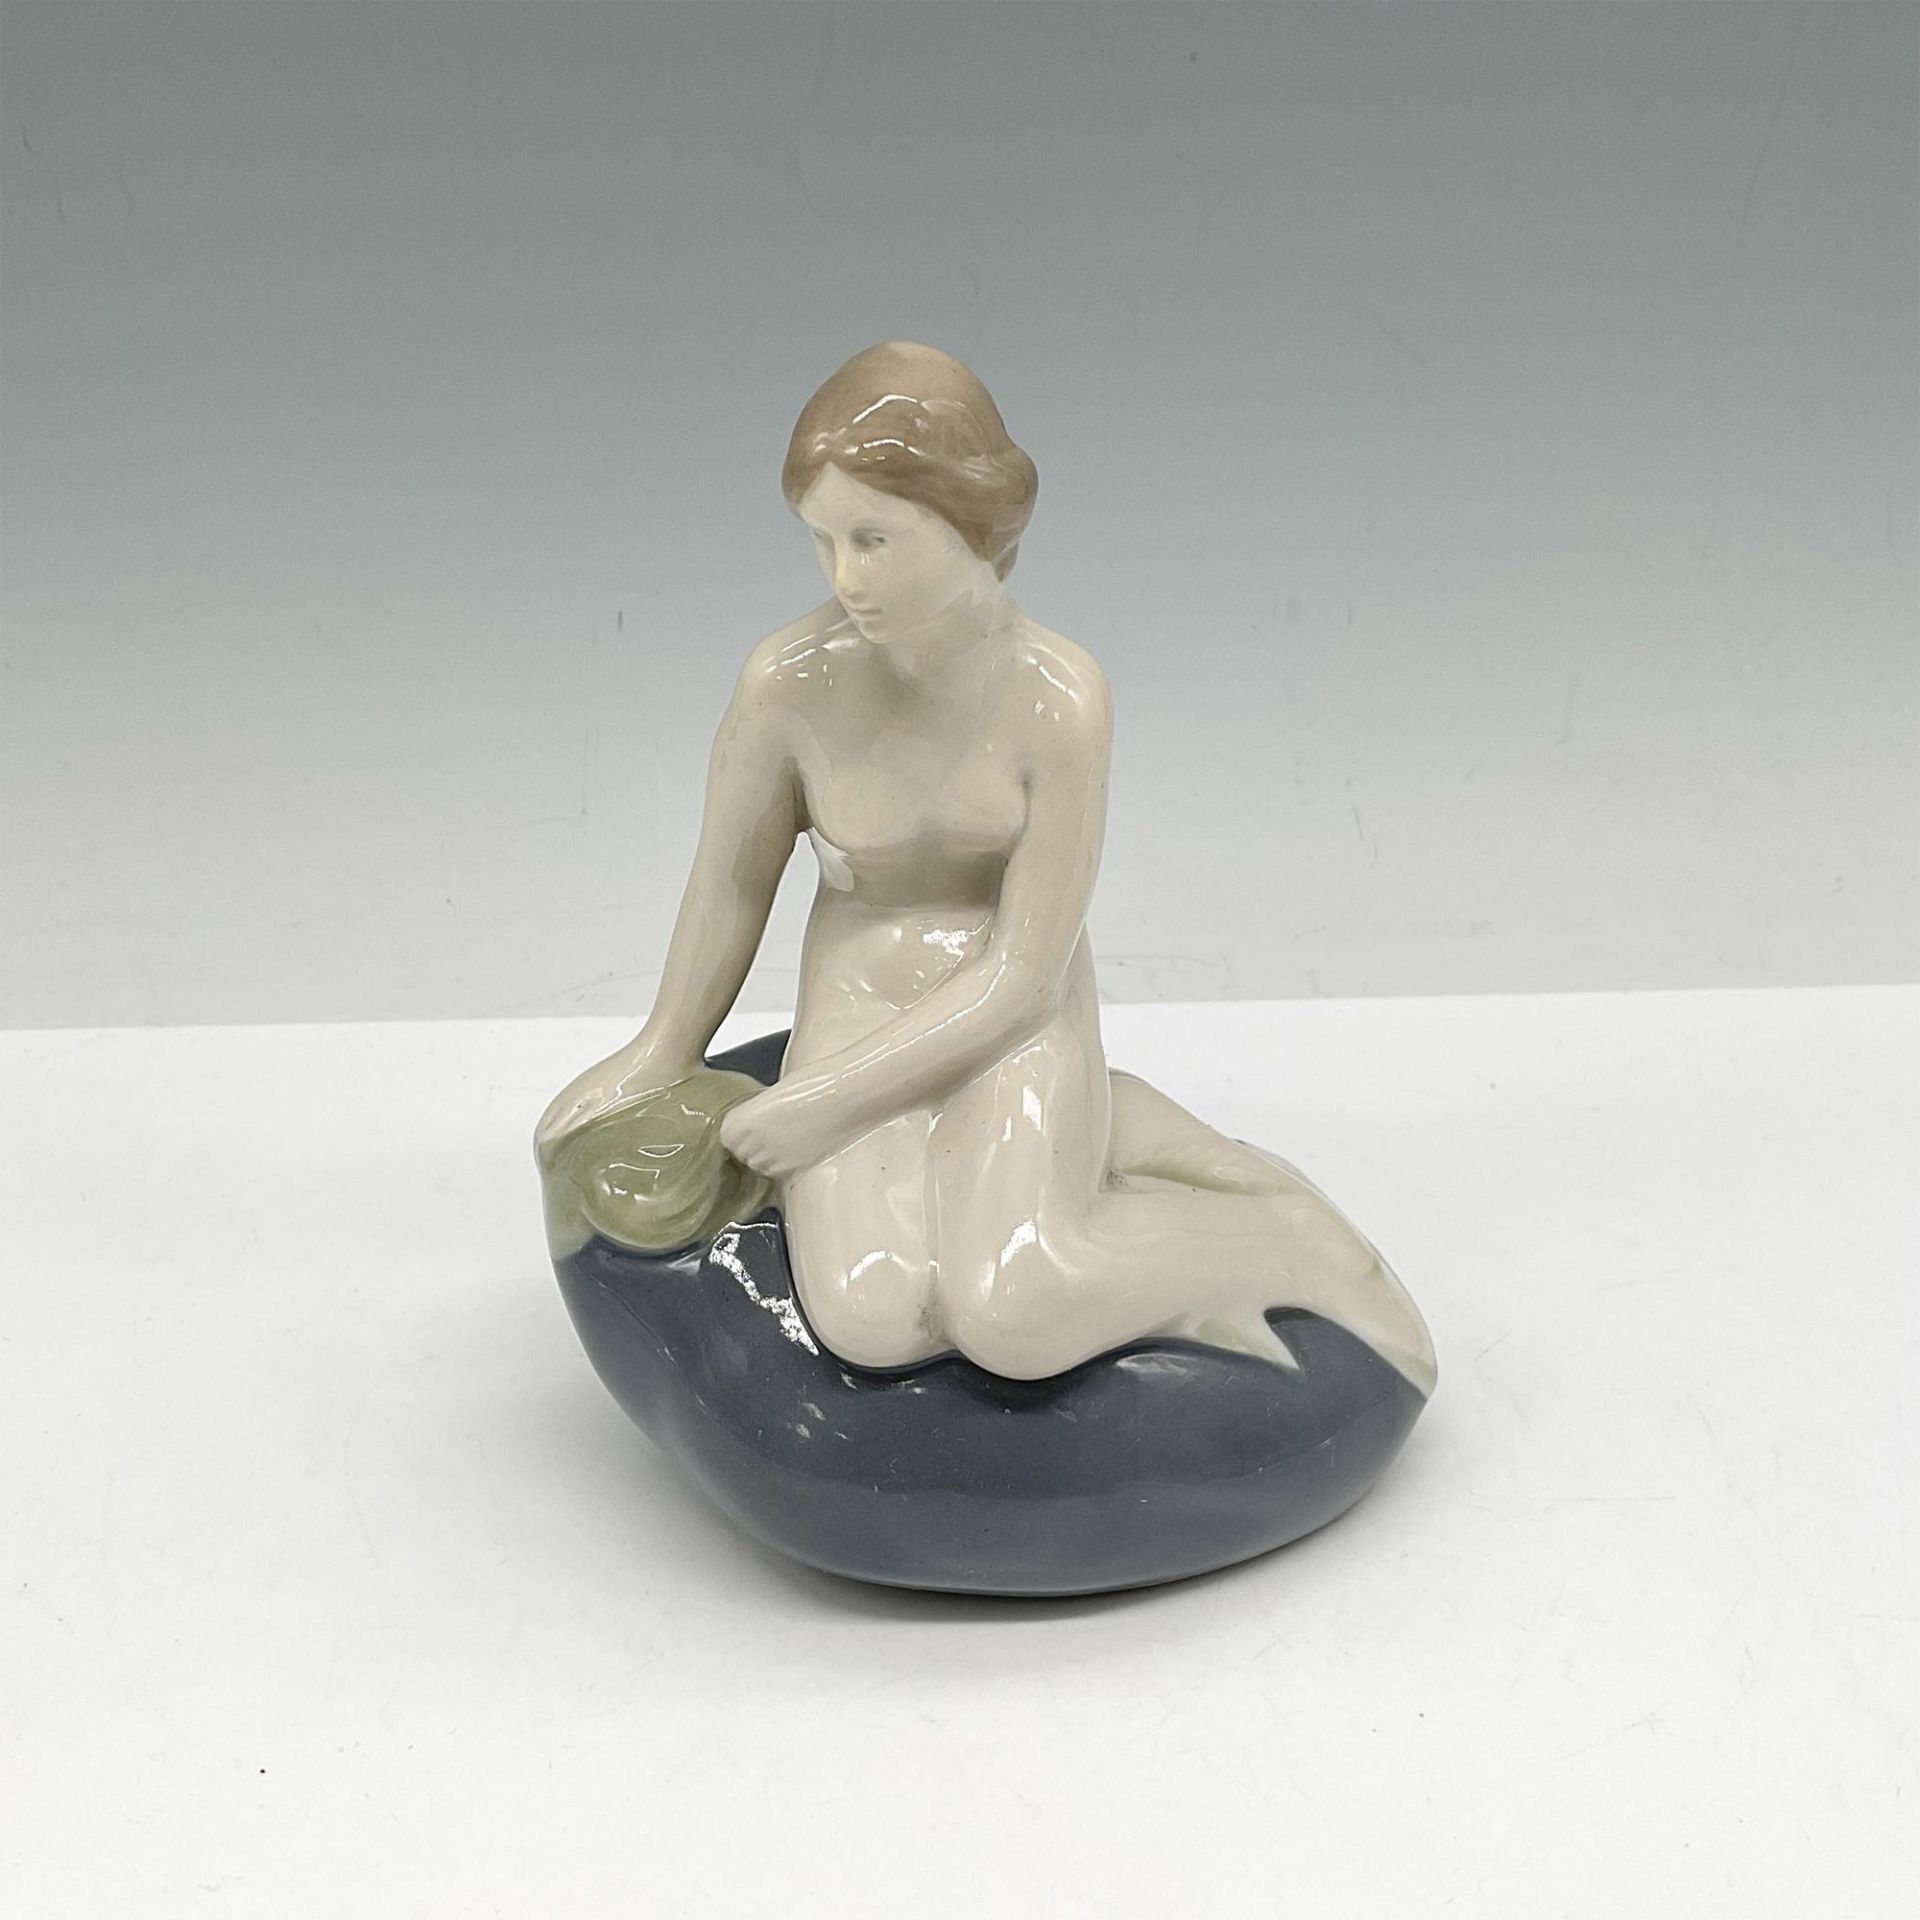 Lippelsdorf Porcelain Figurine, Little Mermaid